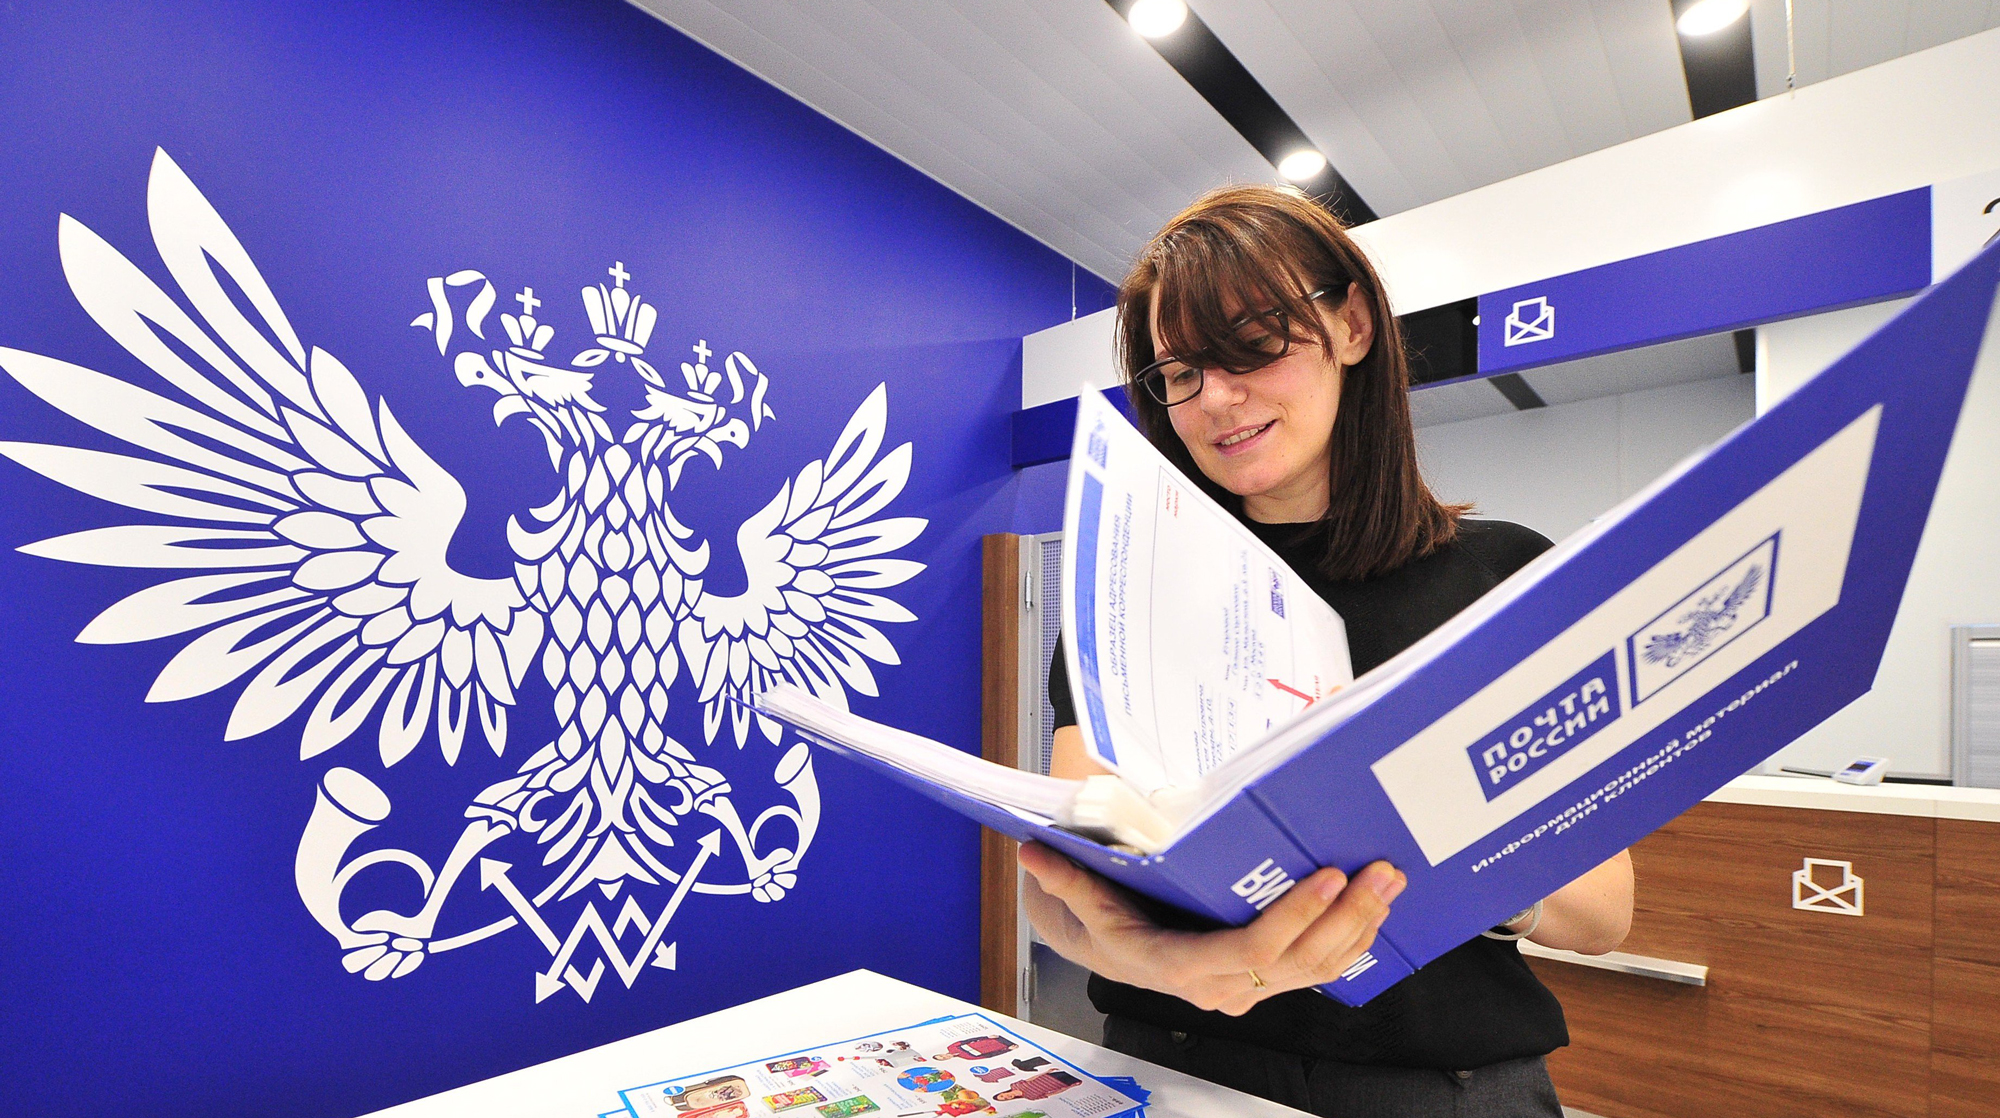 В правительстве говорят о реорганизации почтовой монополии, как об окончательно решенном вопросе Фото: © Агентство Москва/Киселев Сергей